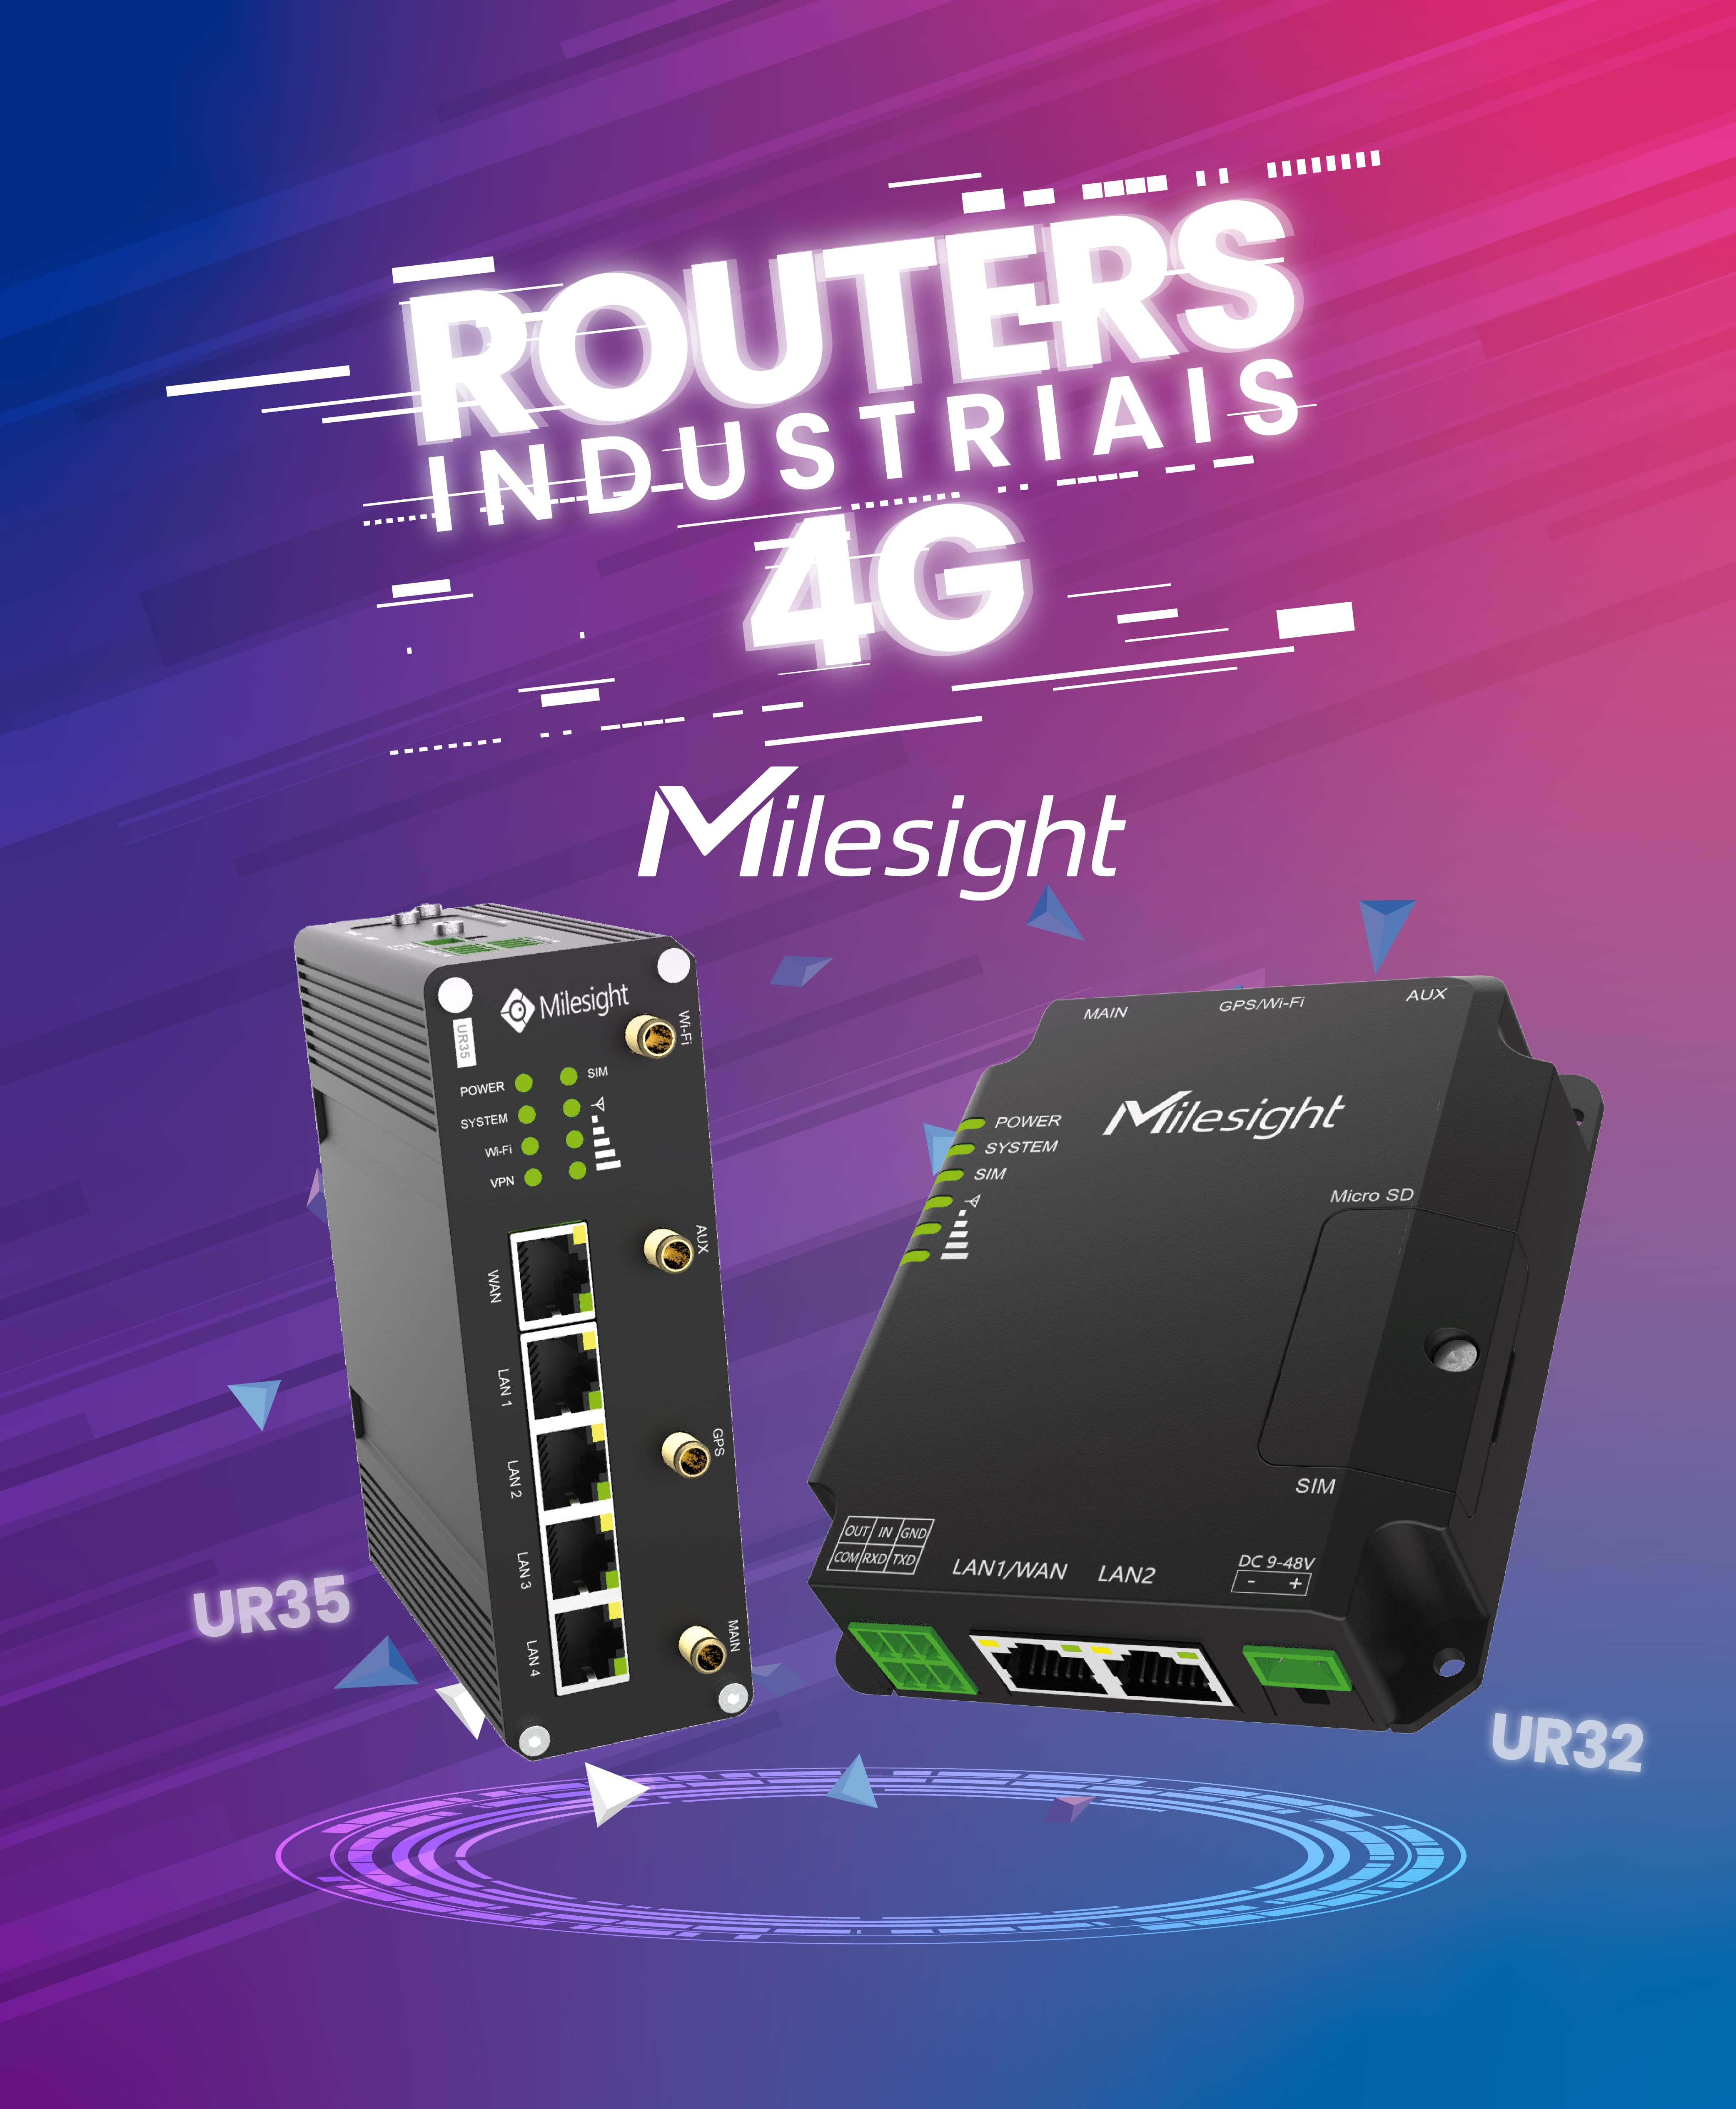 Router 4G Milesight